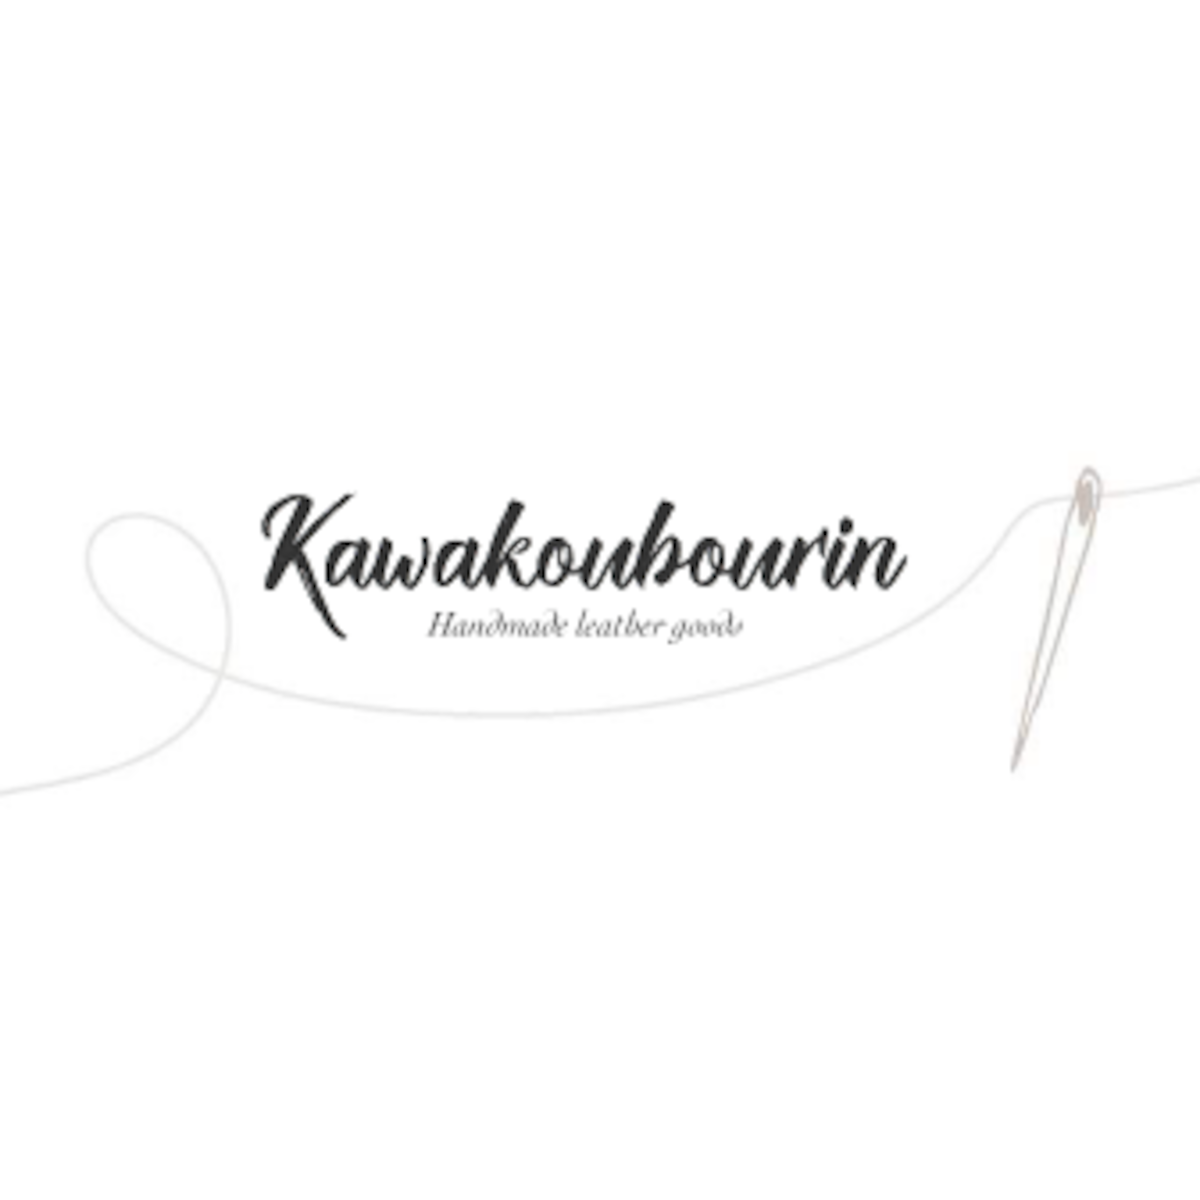 www.kawakoubourin.com